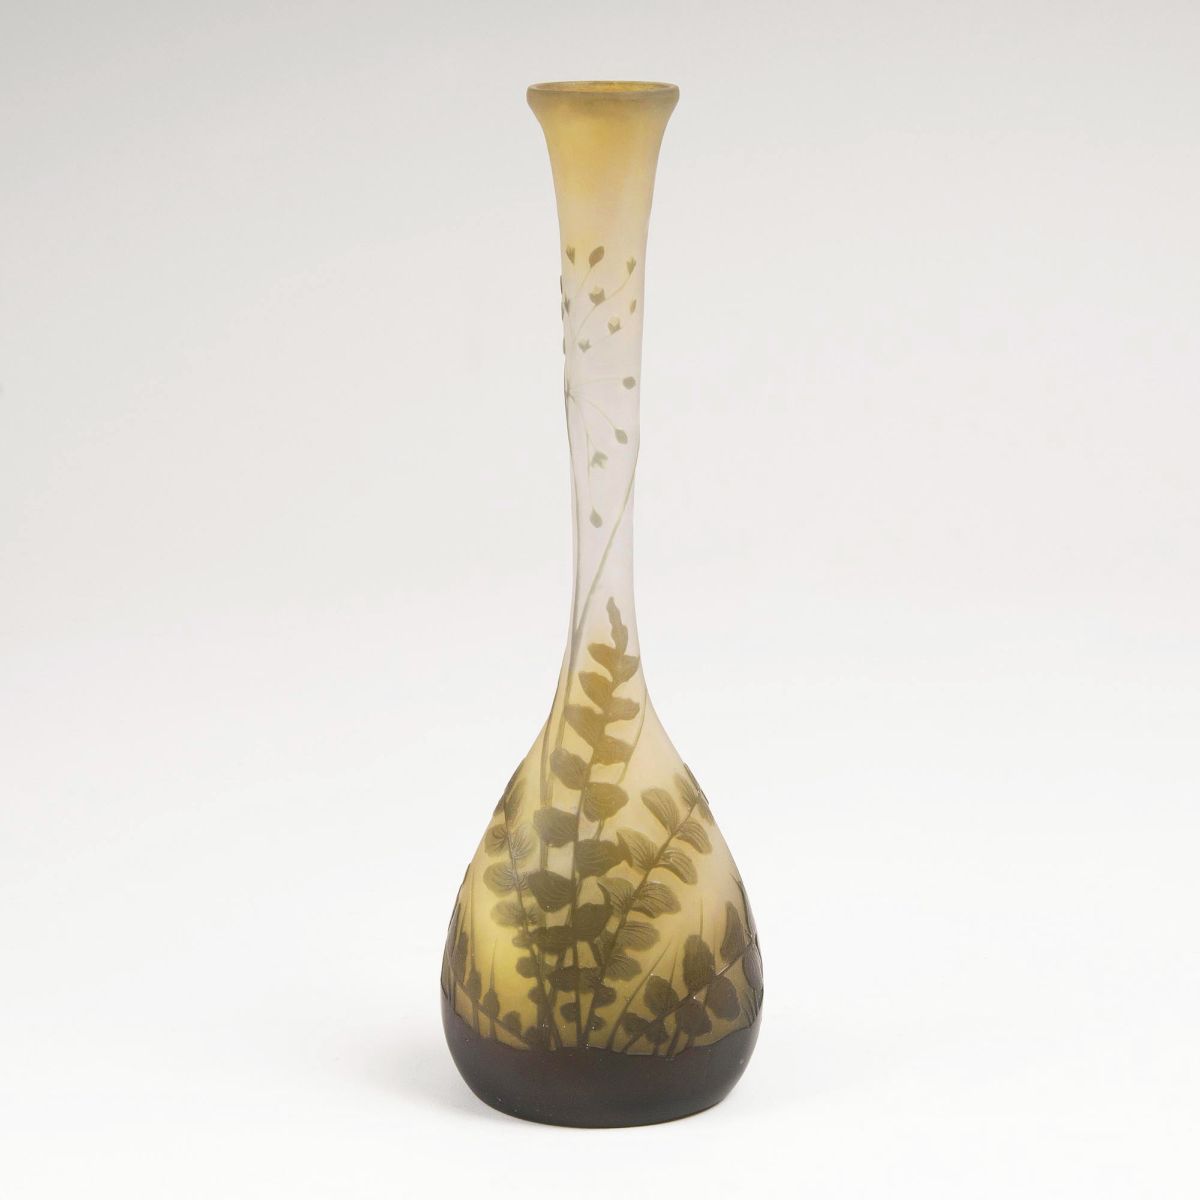 A 'Solifleur' Vase with Fern